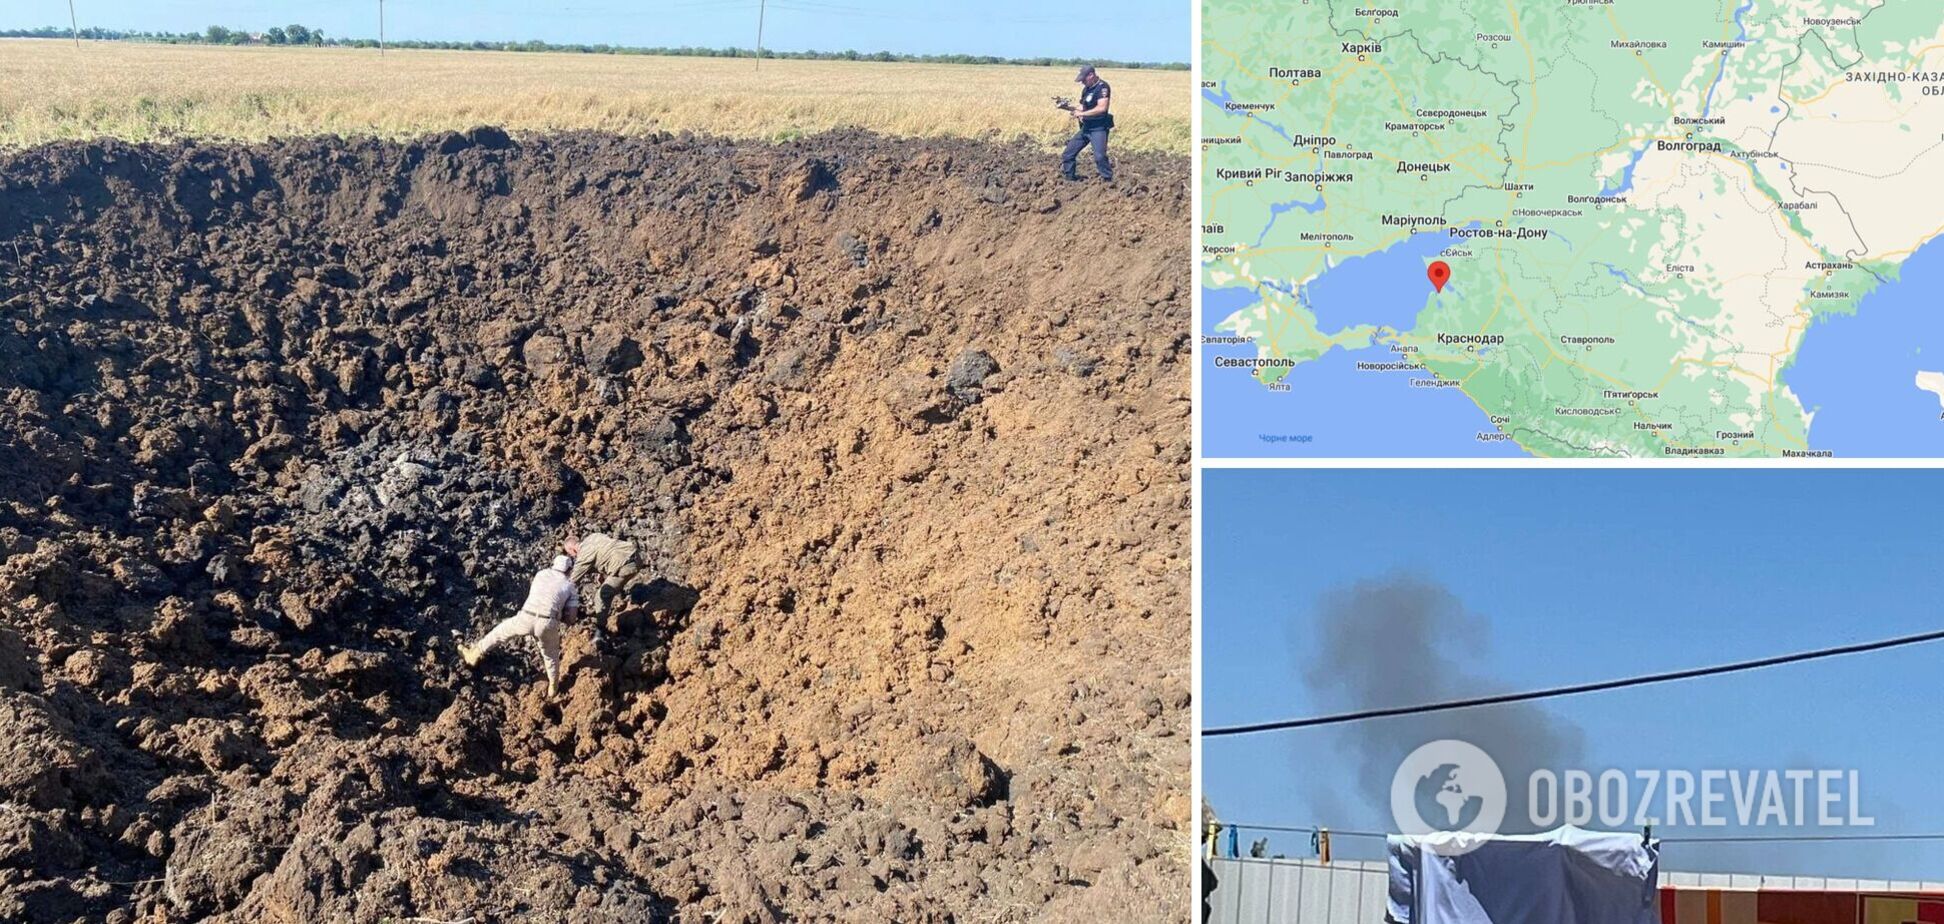 'Тамань, спишь?' В России возле аэродрома прогремел взрыв, на видео показали глубокую воронку